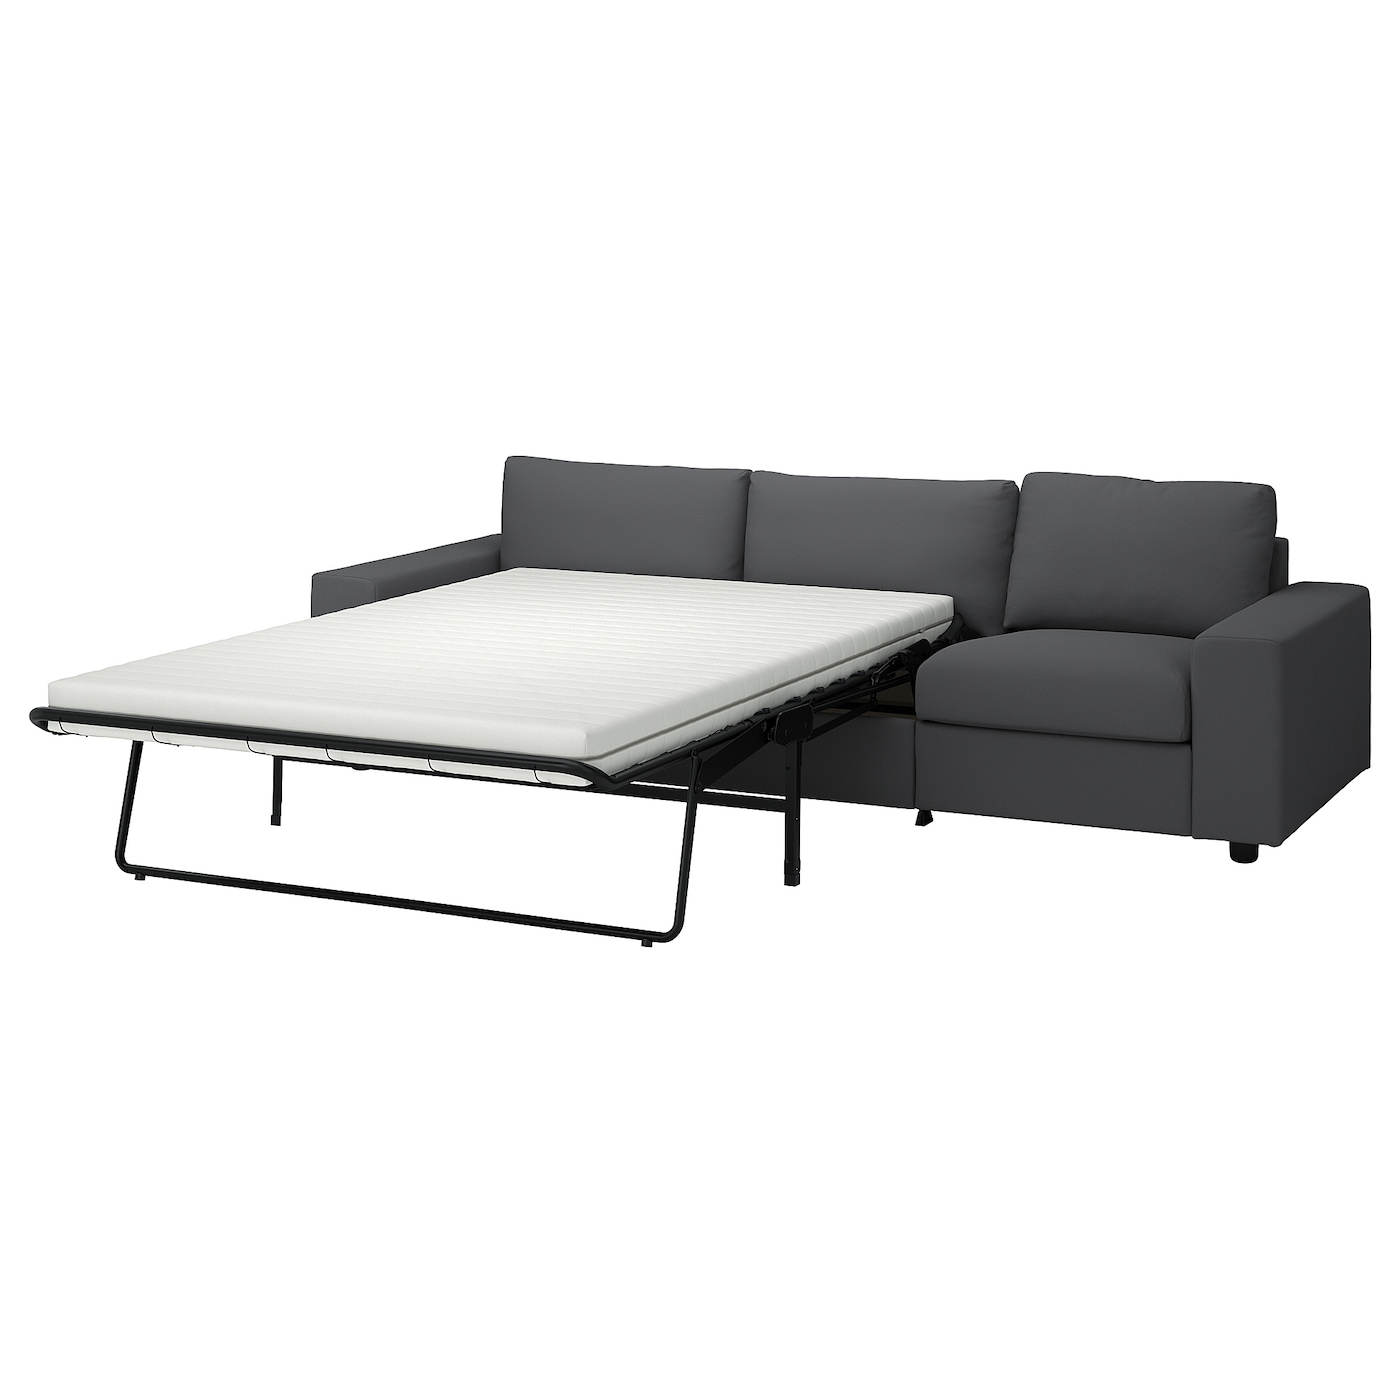 ВИМЛЕ 3-местный диван-кровать, с широкими подлокотниками/Халларп серый VIMLE IKEA